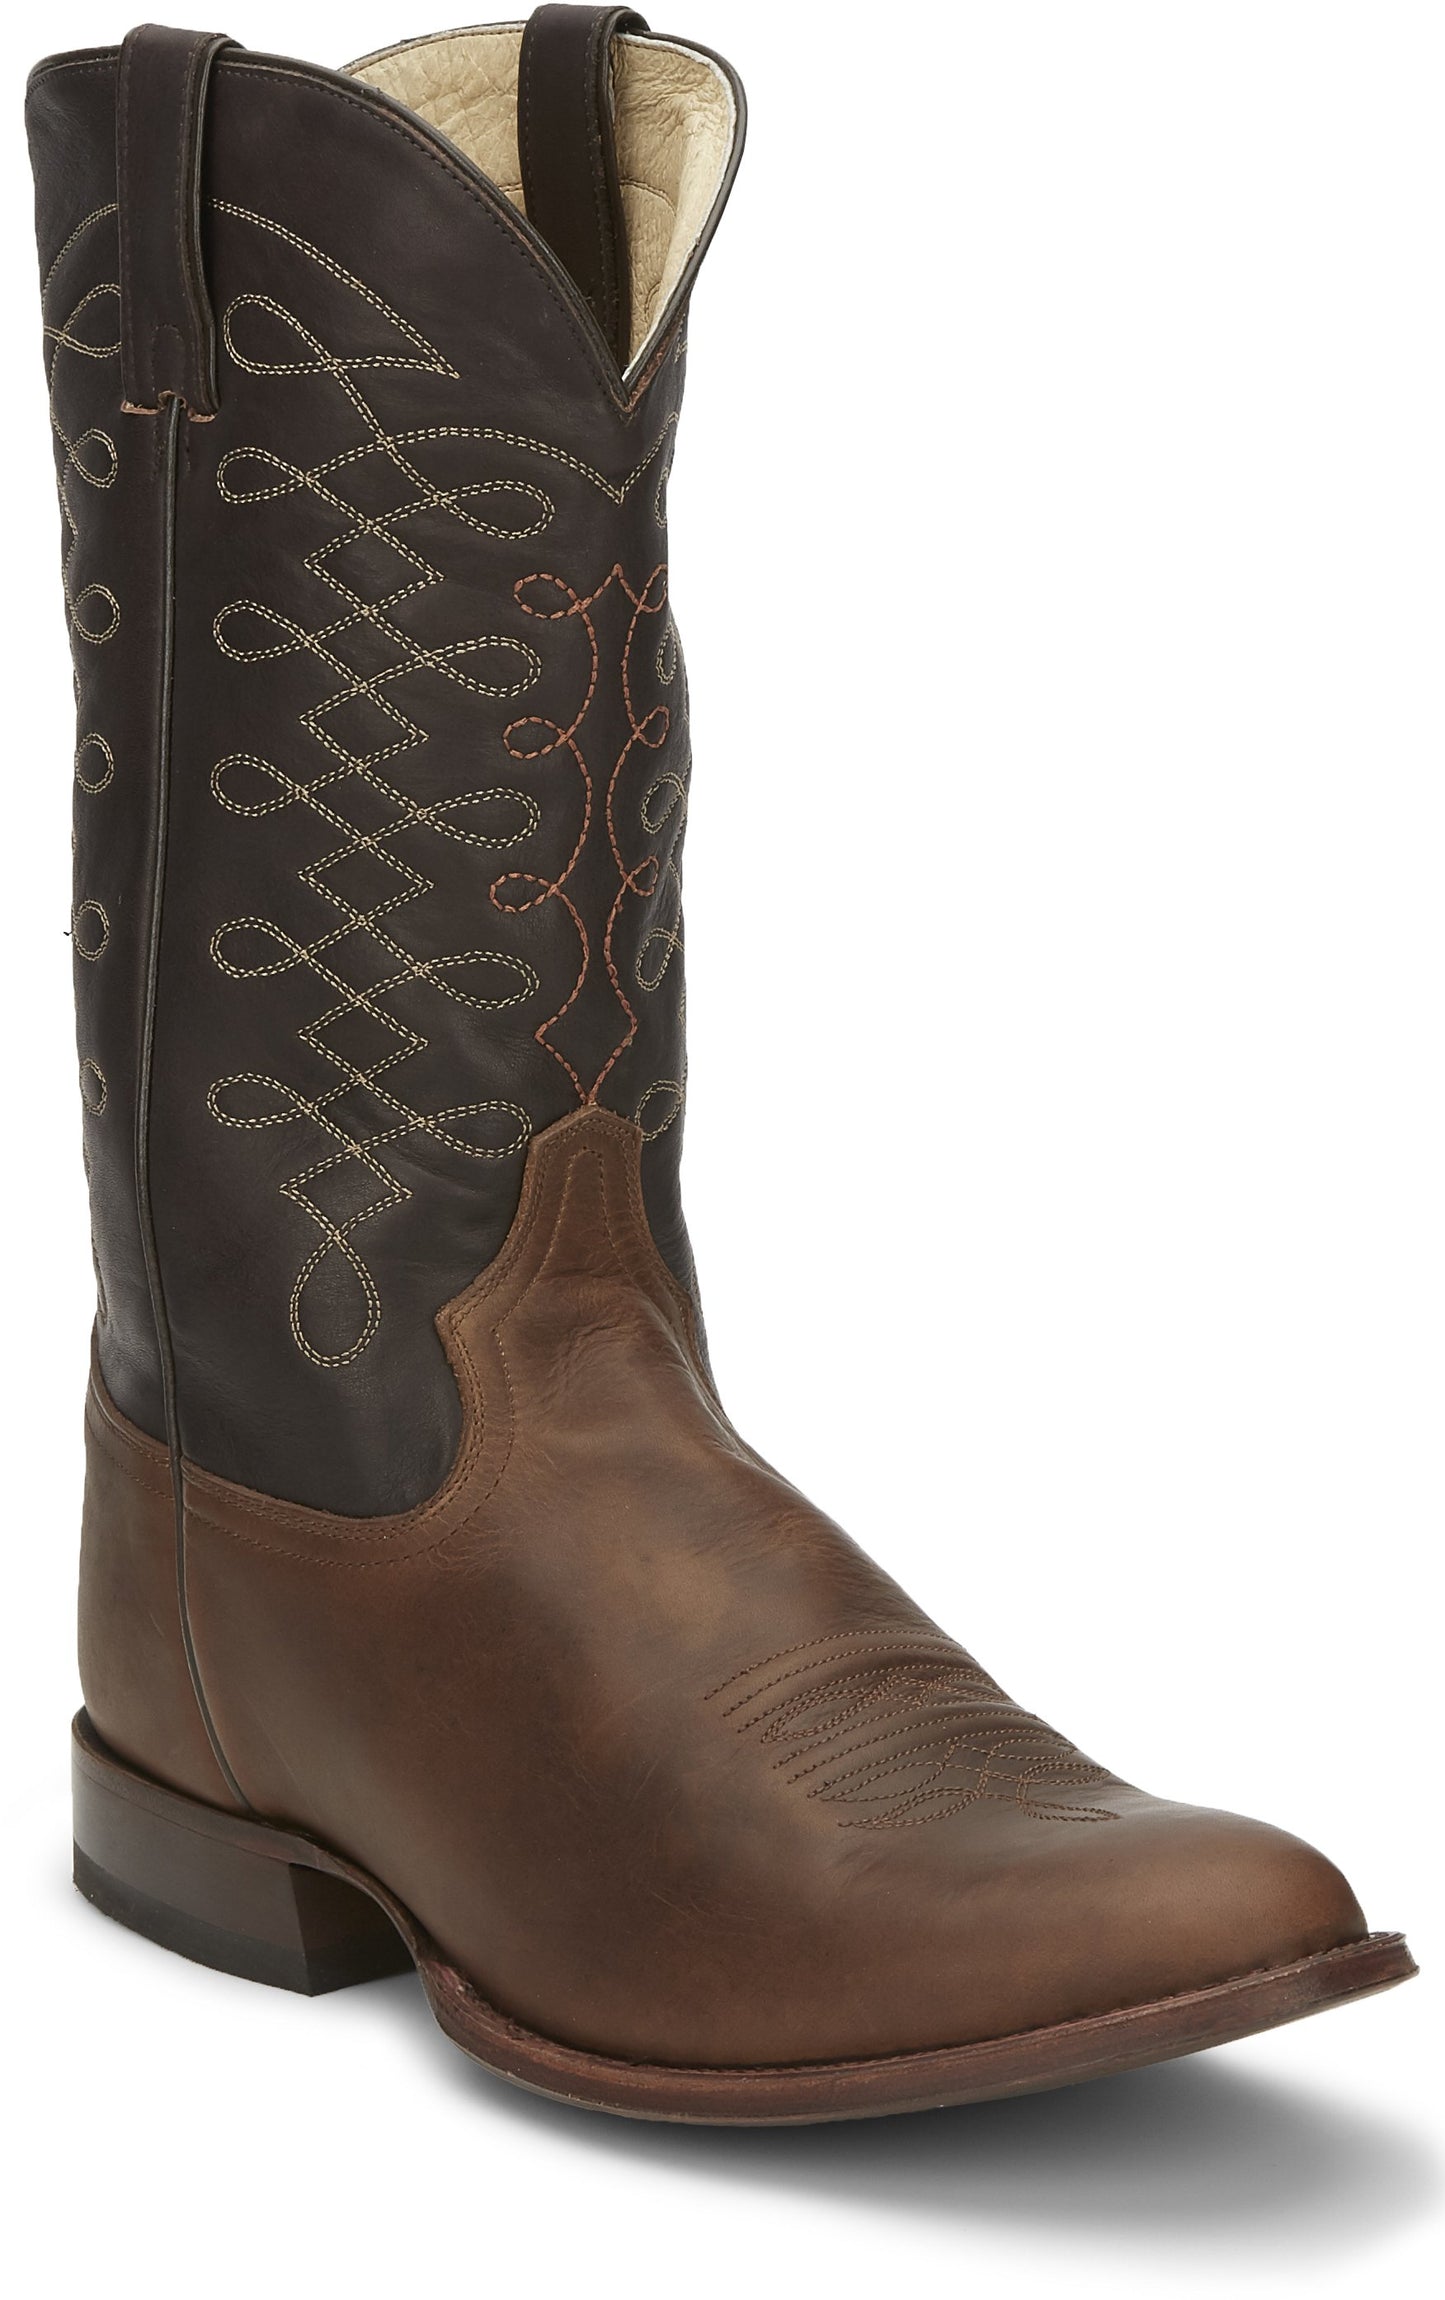 Men's Tony Lama Cowboy Boots: Patron Fossil - TL3008